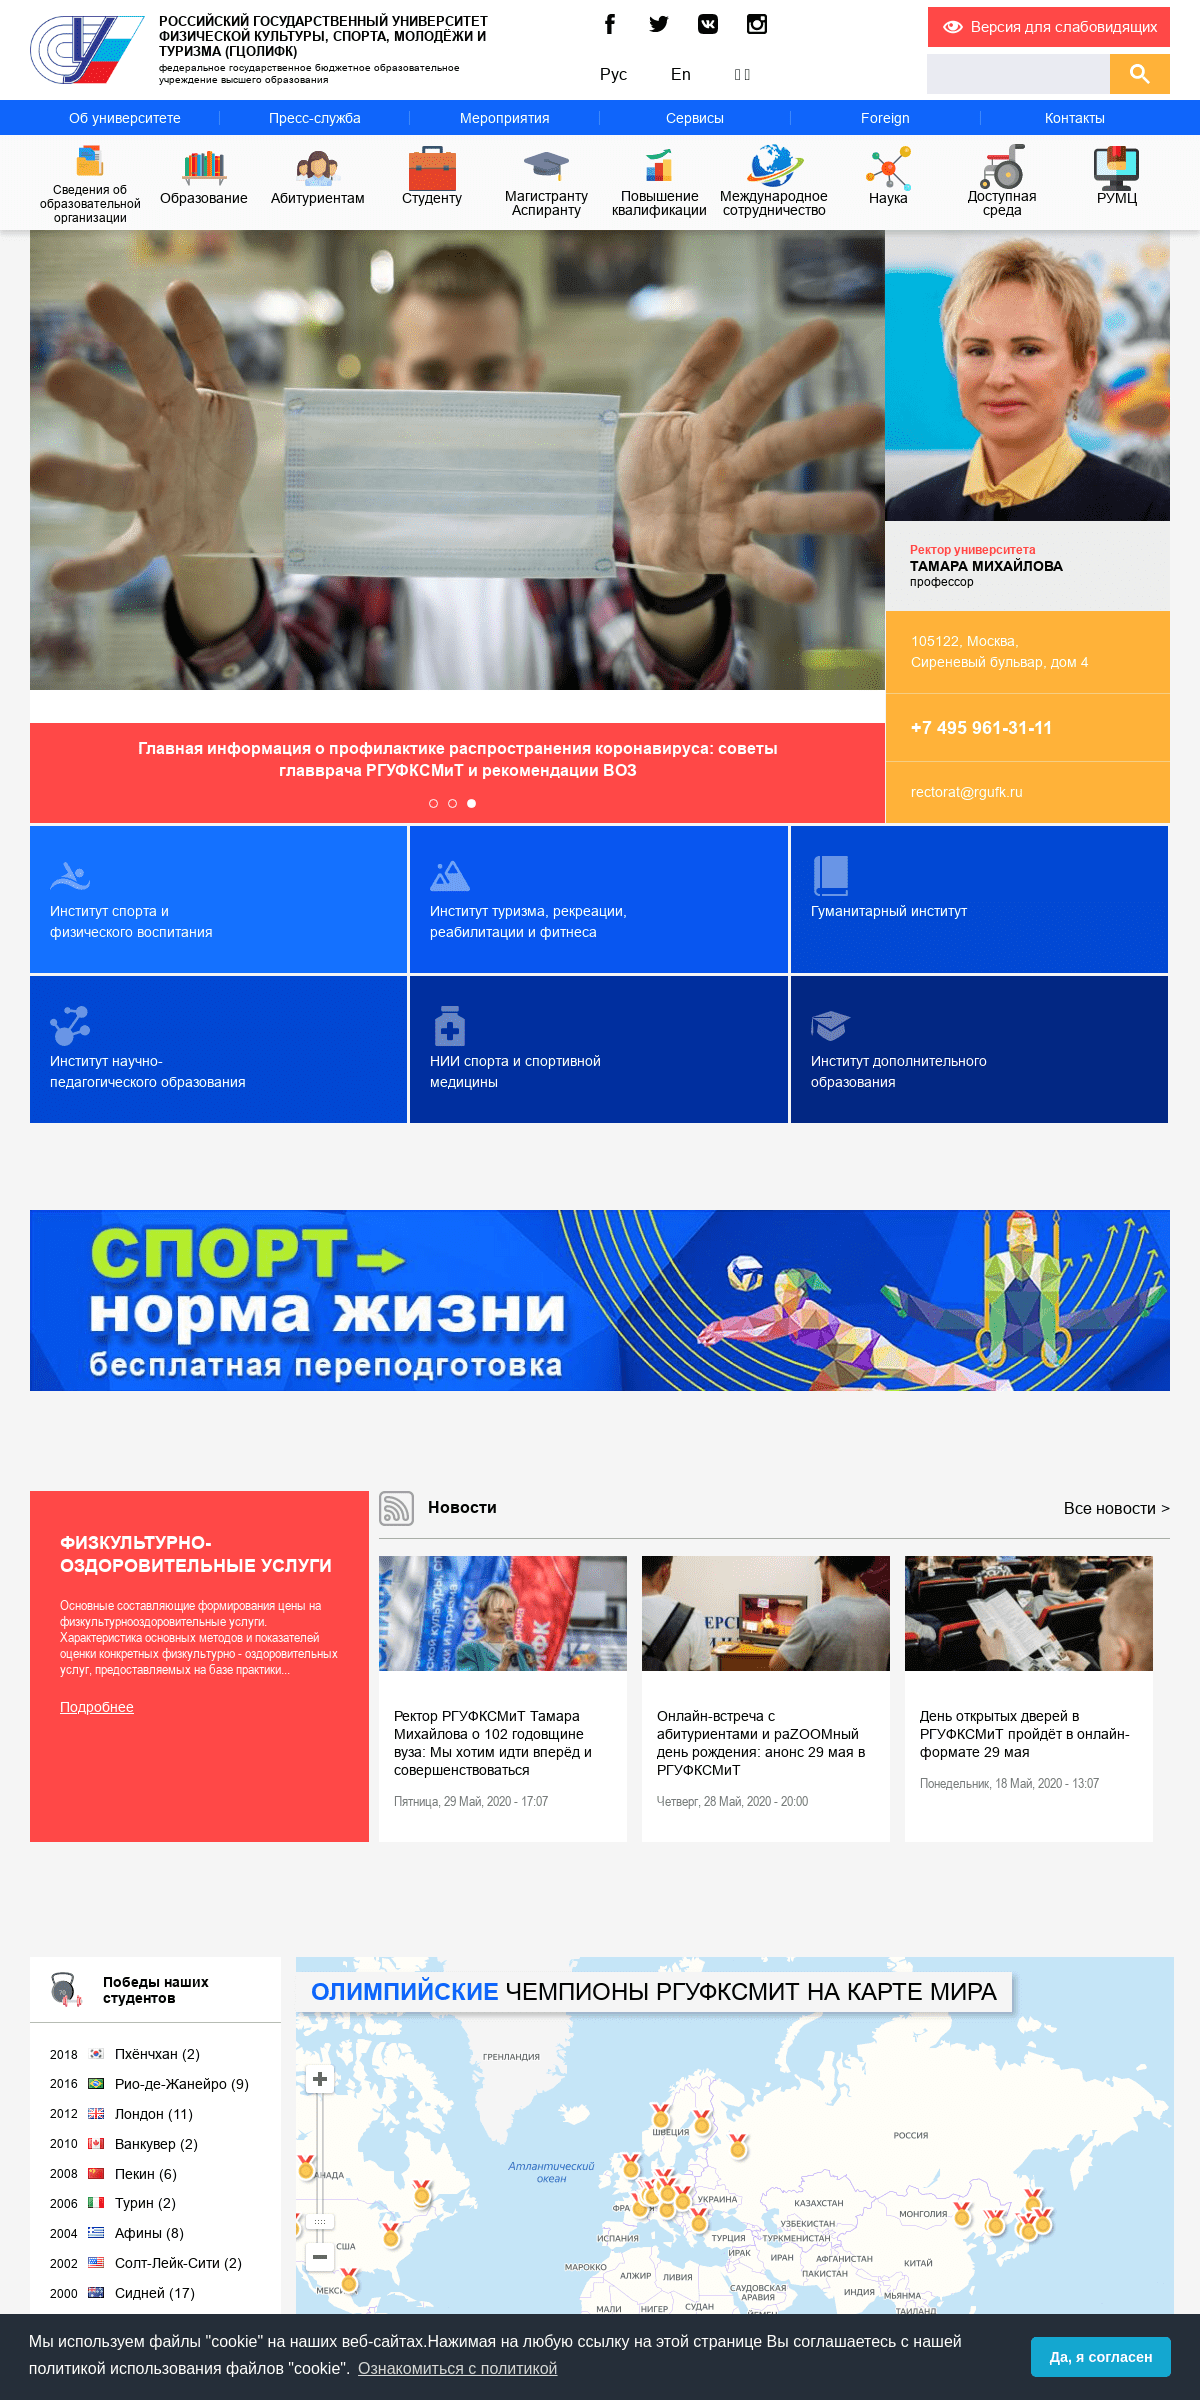 A complete backup of sportedu.ru